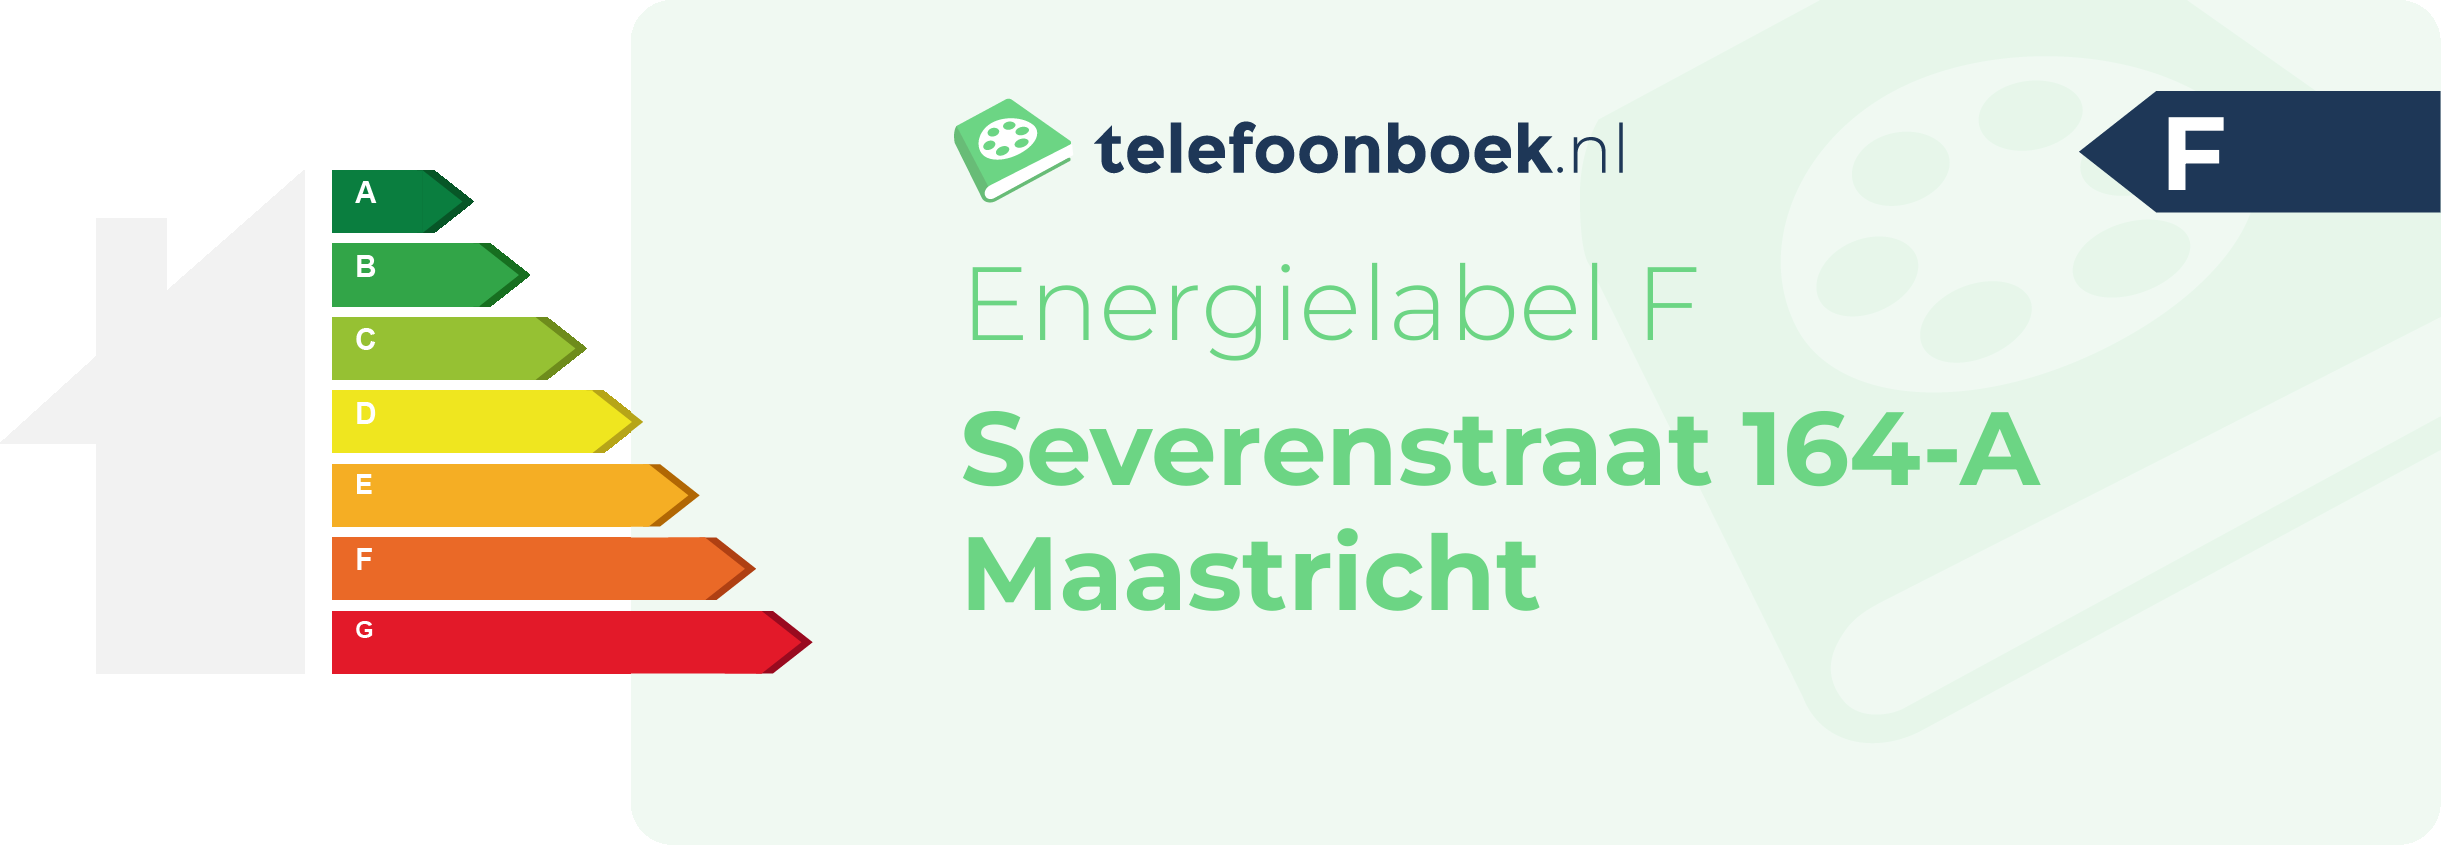 Energielabel Severenstraat 164-A Maastricht